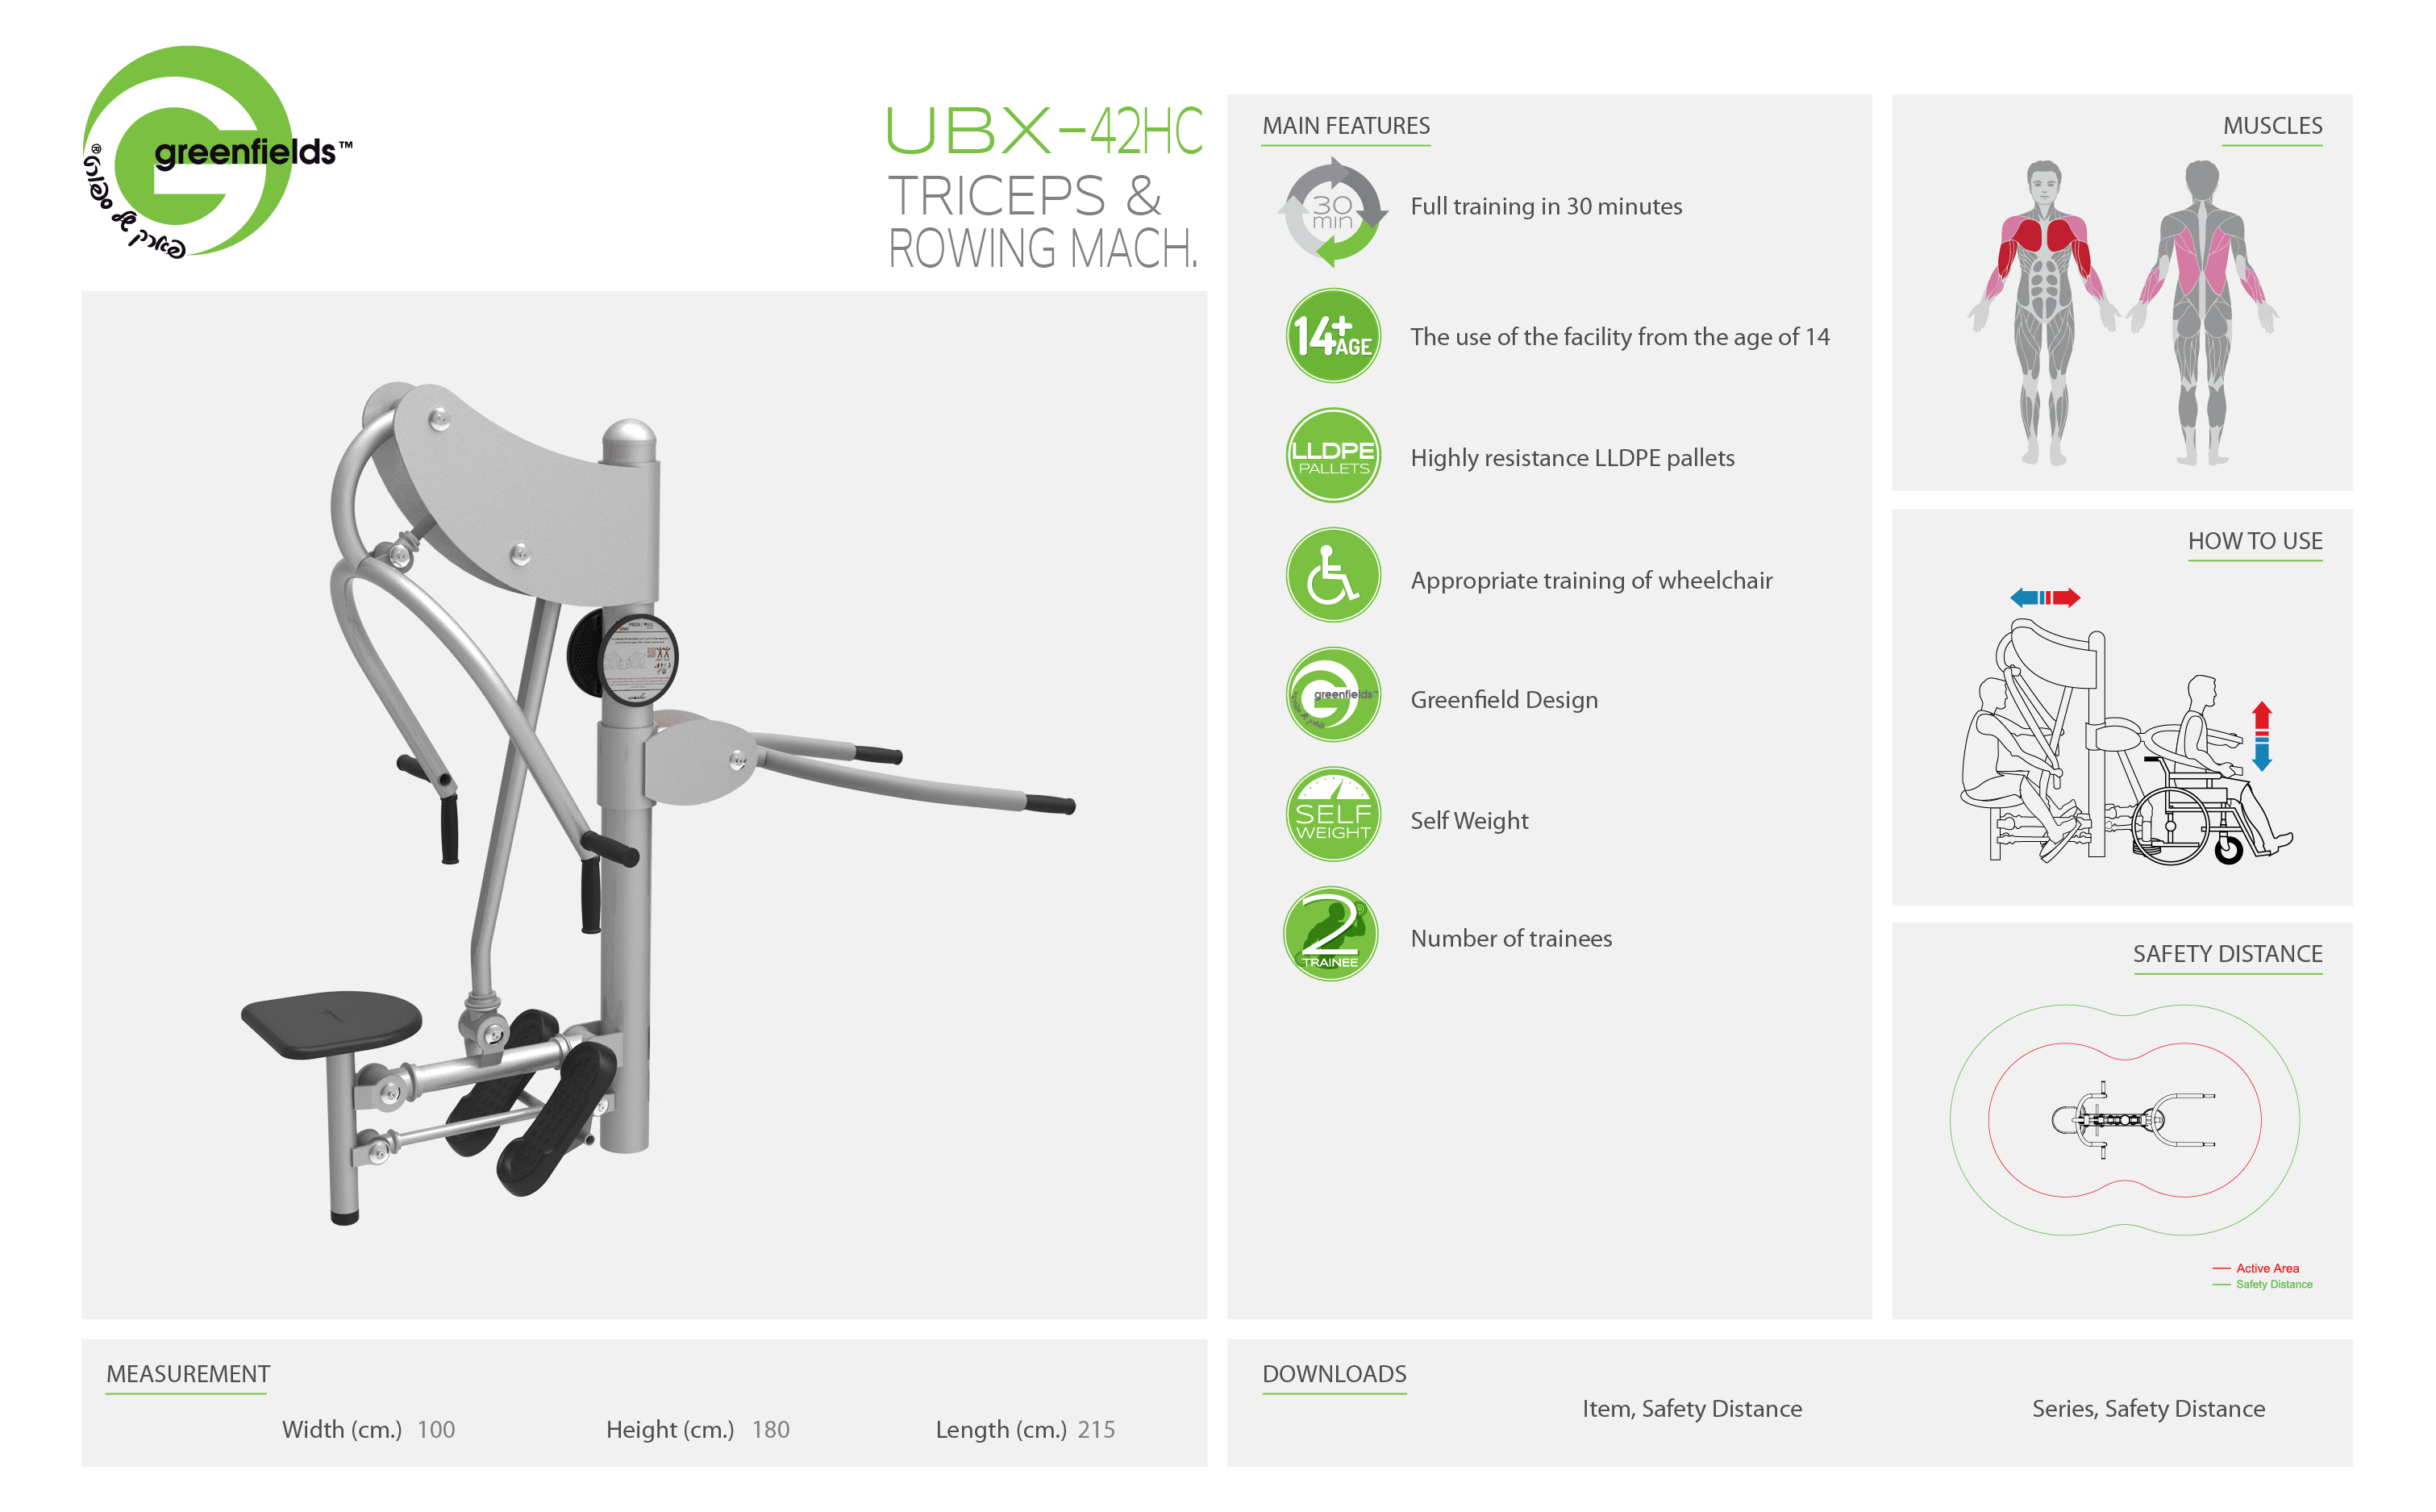 ubx-42HC אורבניקס - מתקן כושר לנכים